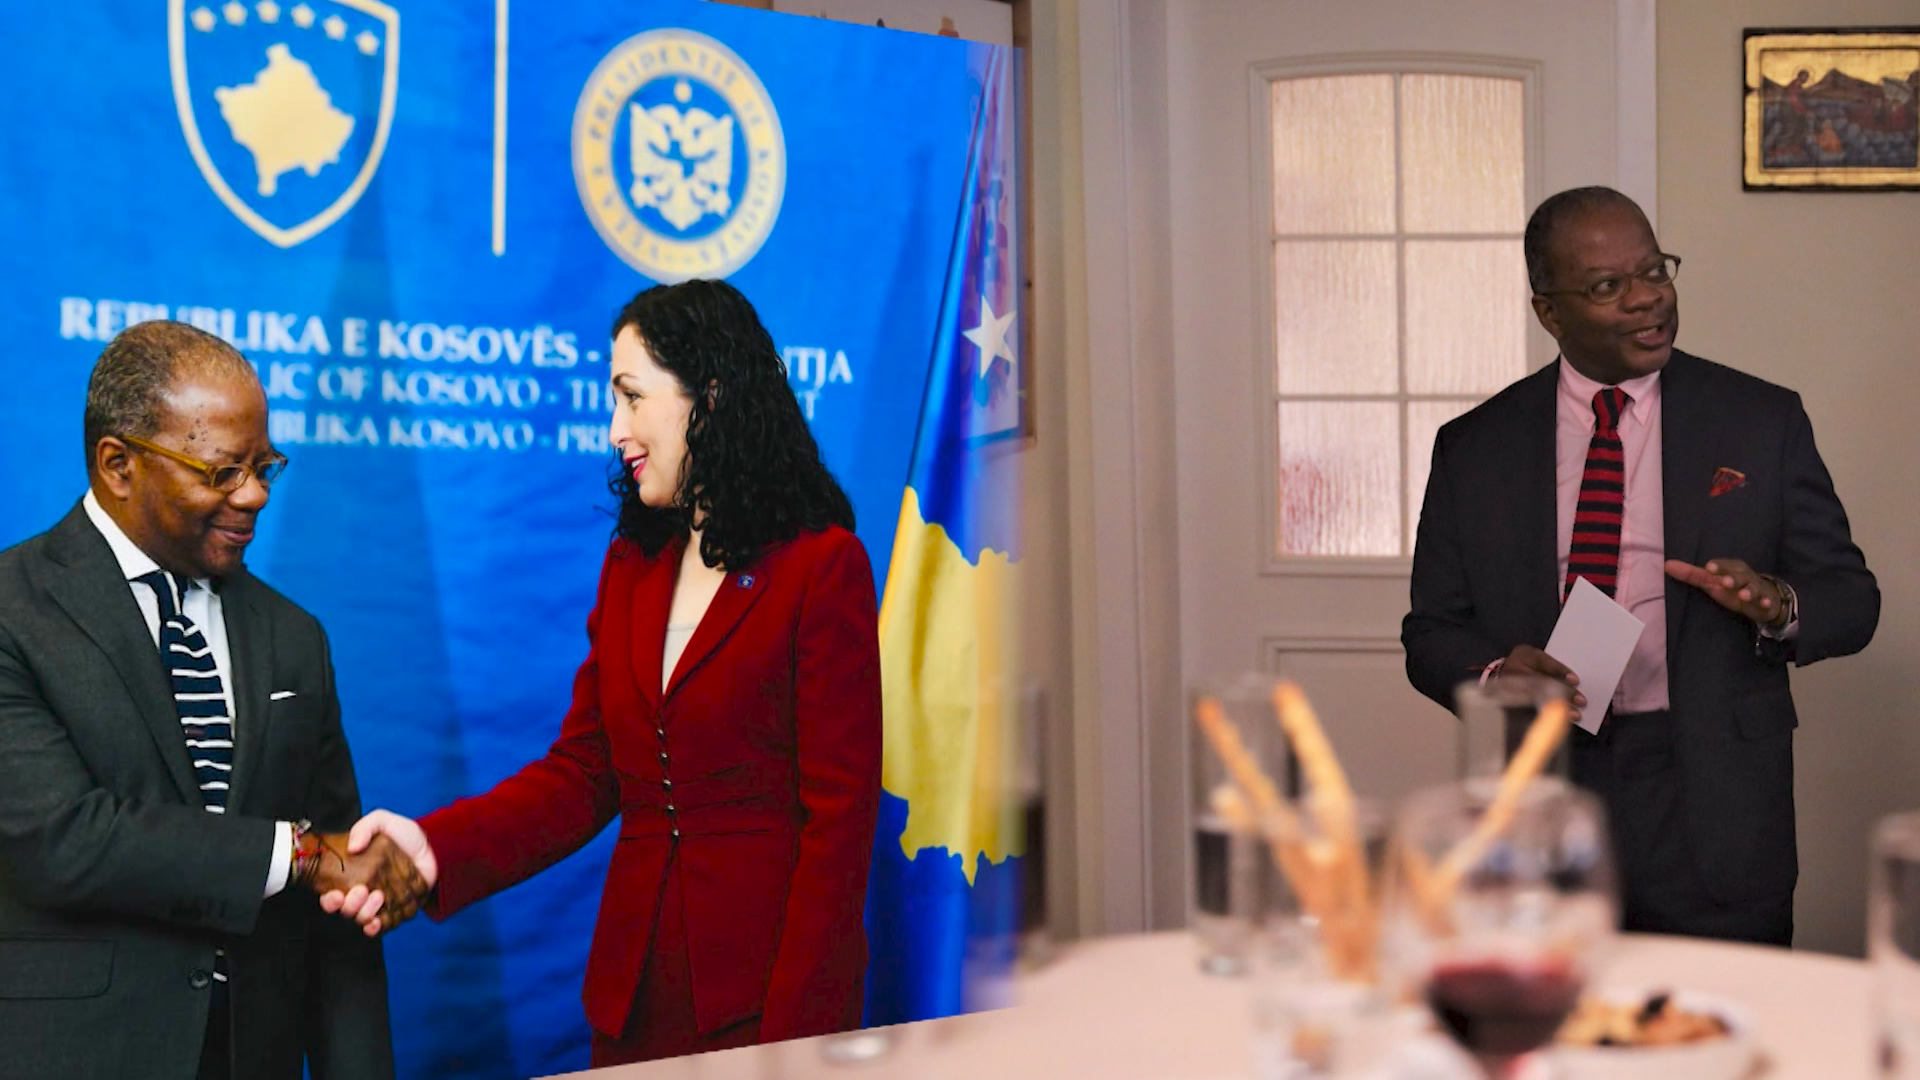 Zyrtari i DASH në Kosovë: Mbështesim përmirësimin e gjyqësorit dhe strukturat e sigurisë! Osmani: Pa SHBA, e pamundur të bëhemi pjesë e INTERPOL